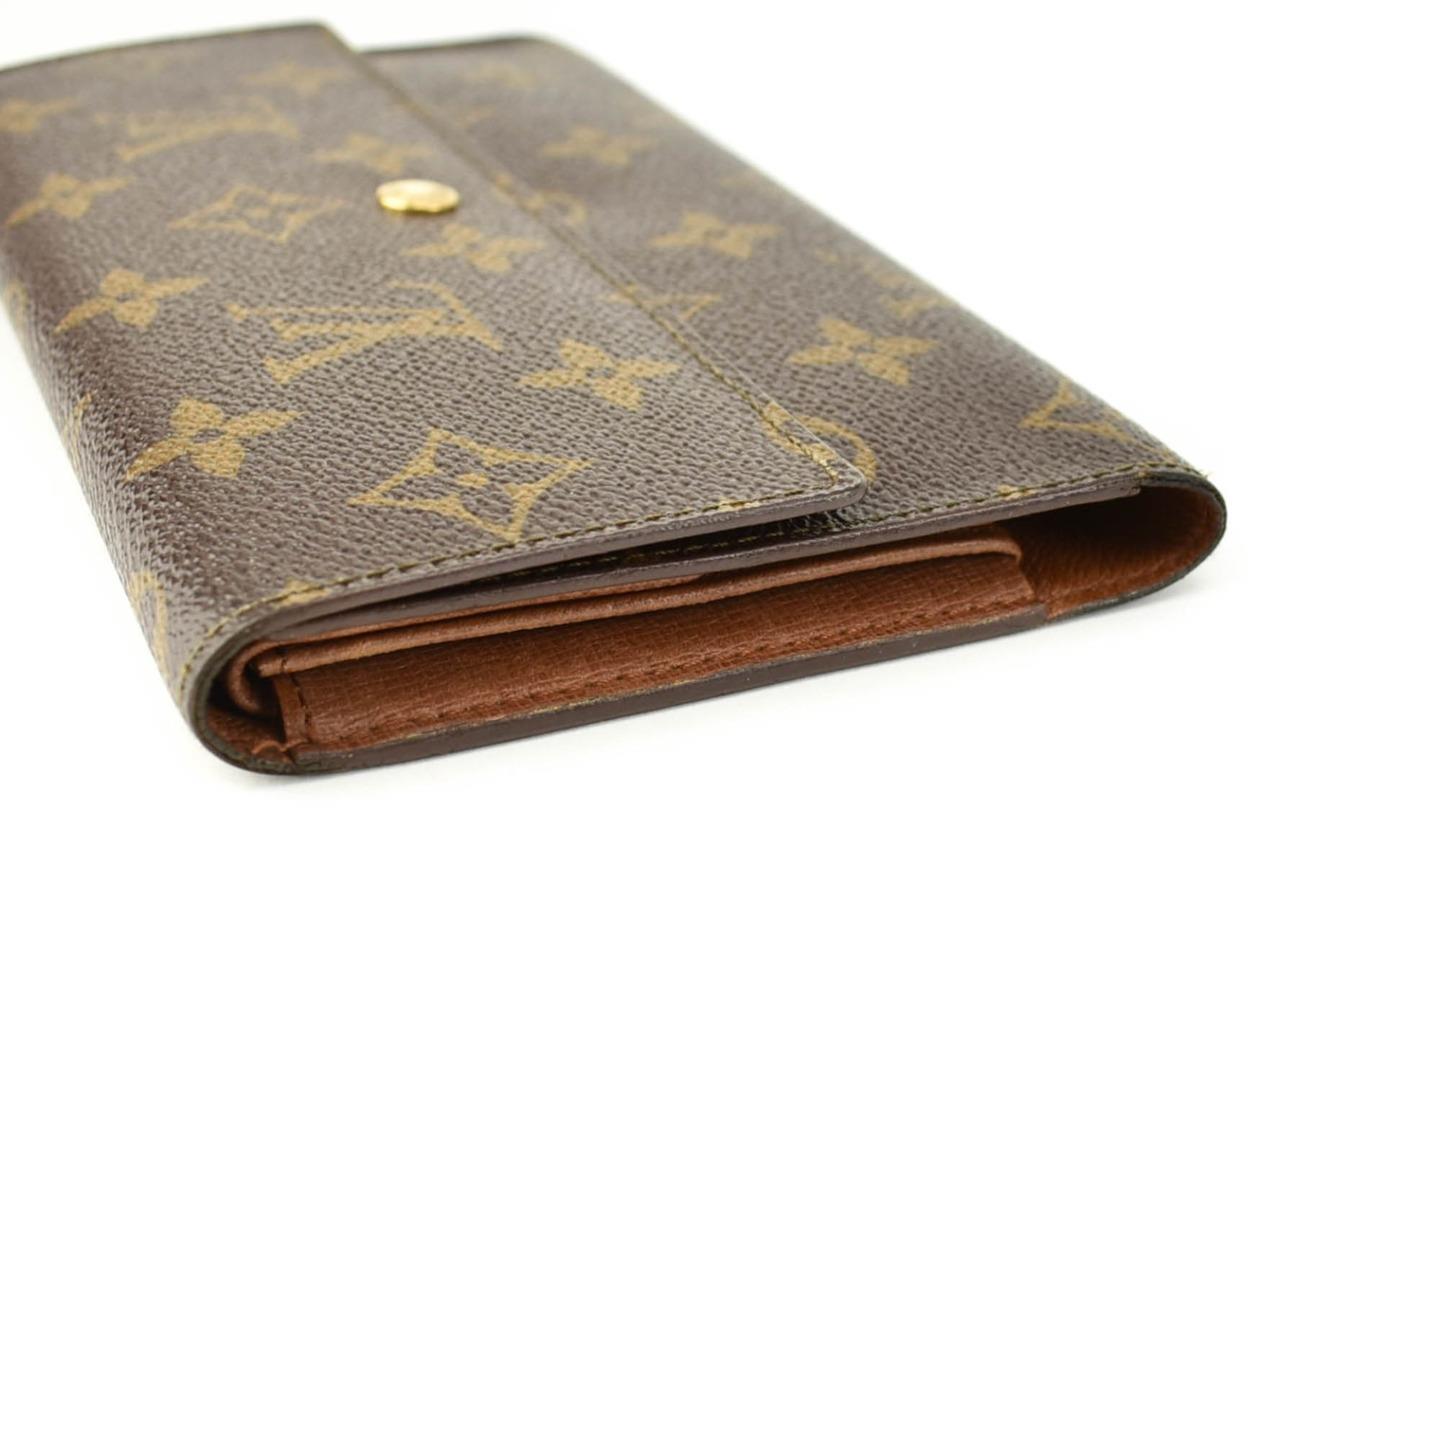 LOUIS VUITTON: Brown, &quot;LV&quot; Logo & Leather Long Folding Wallet (vv) | eBay